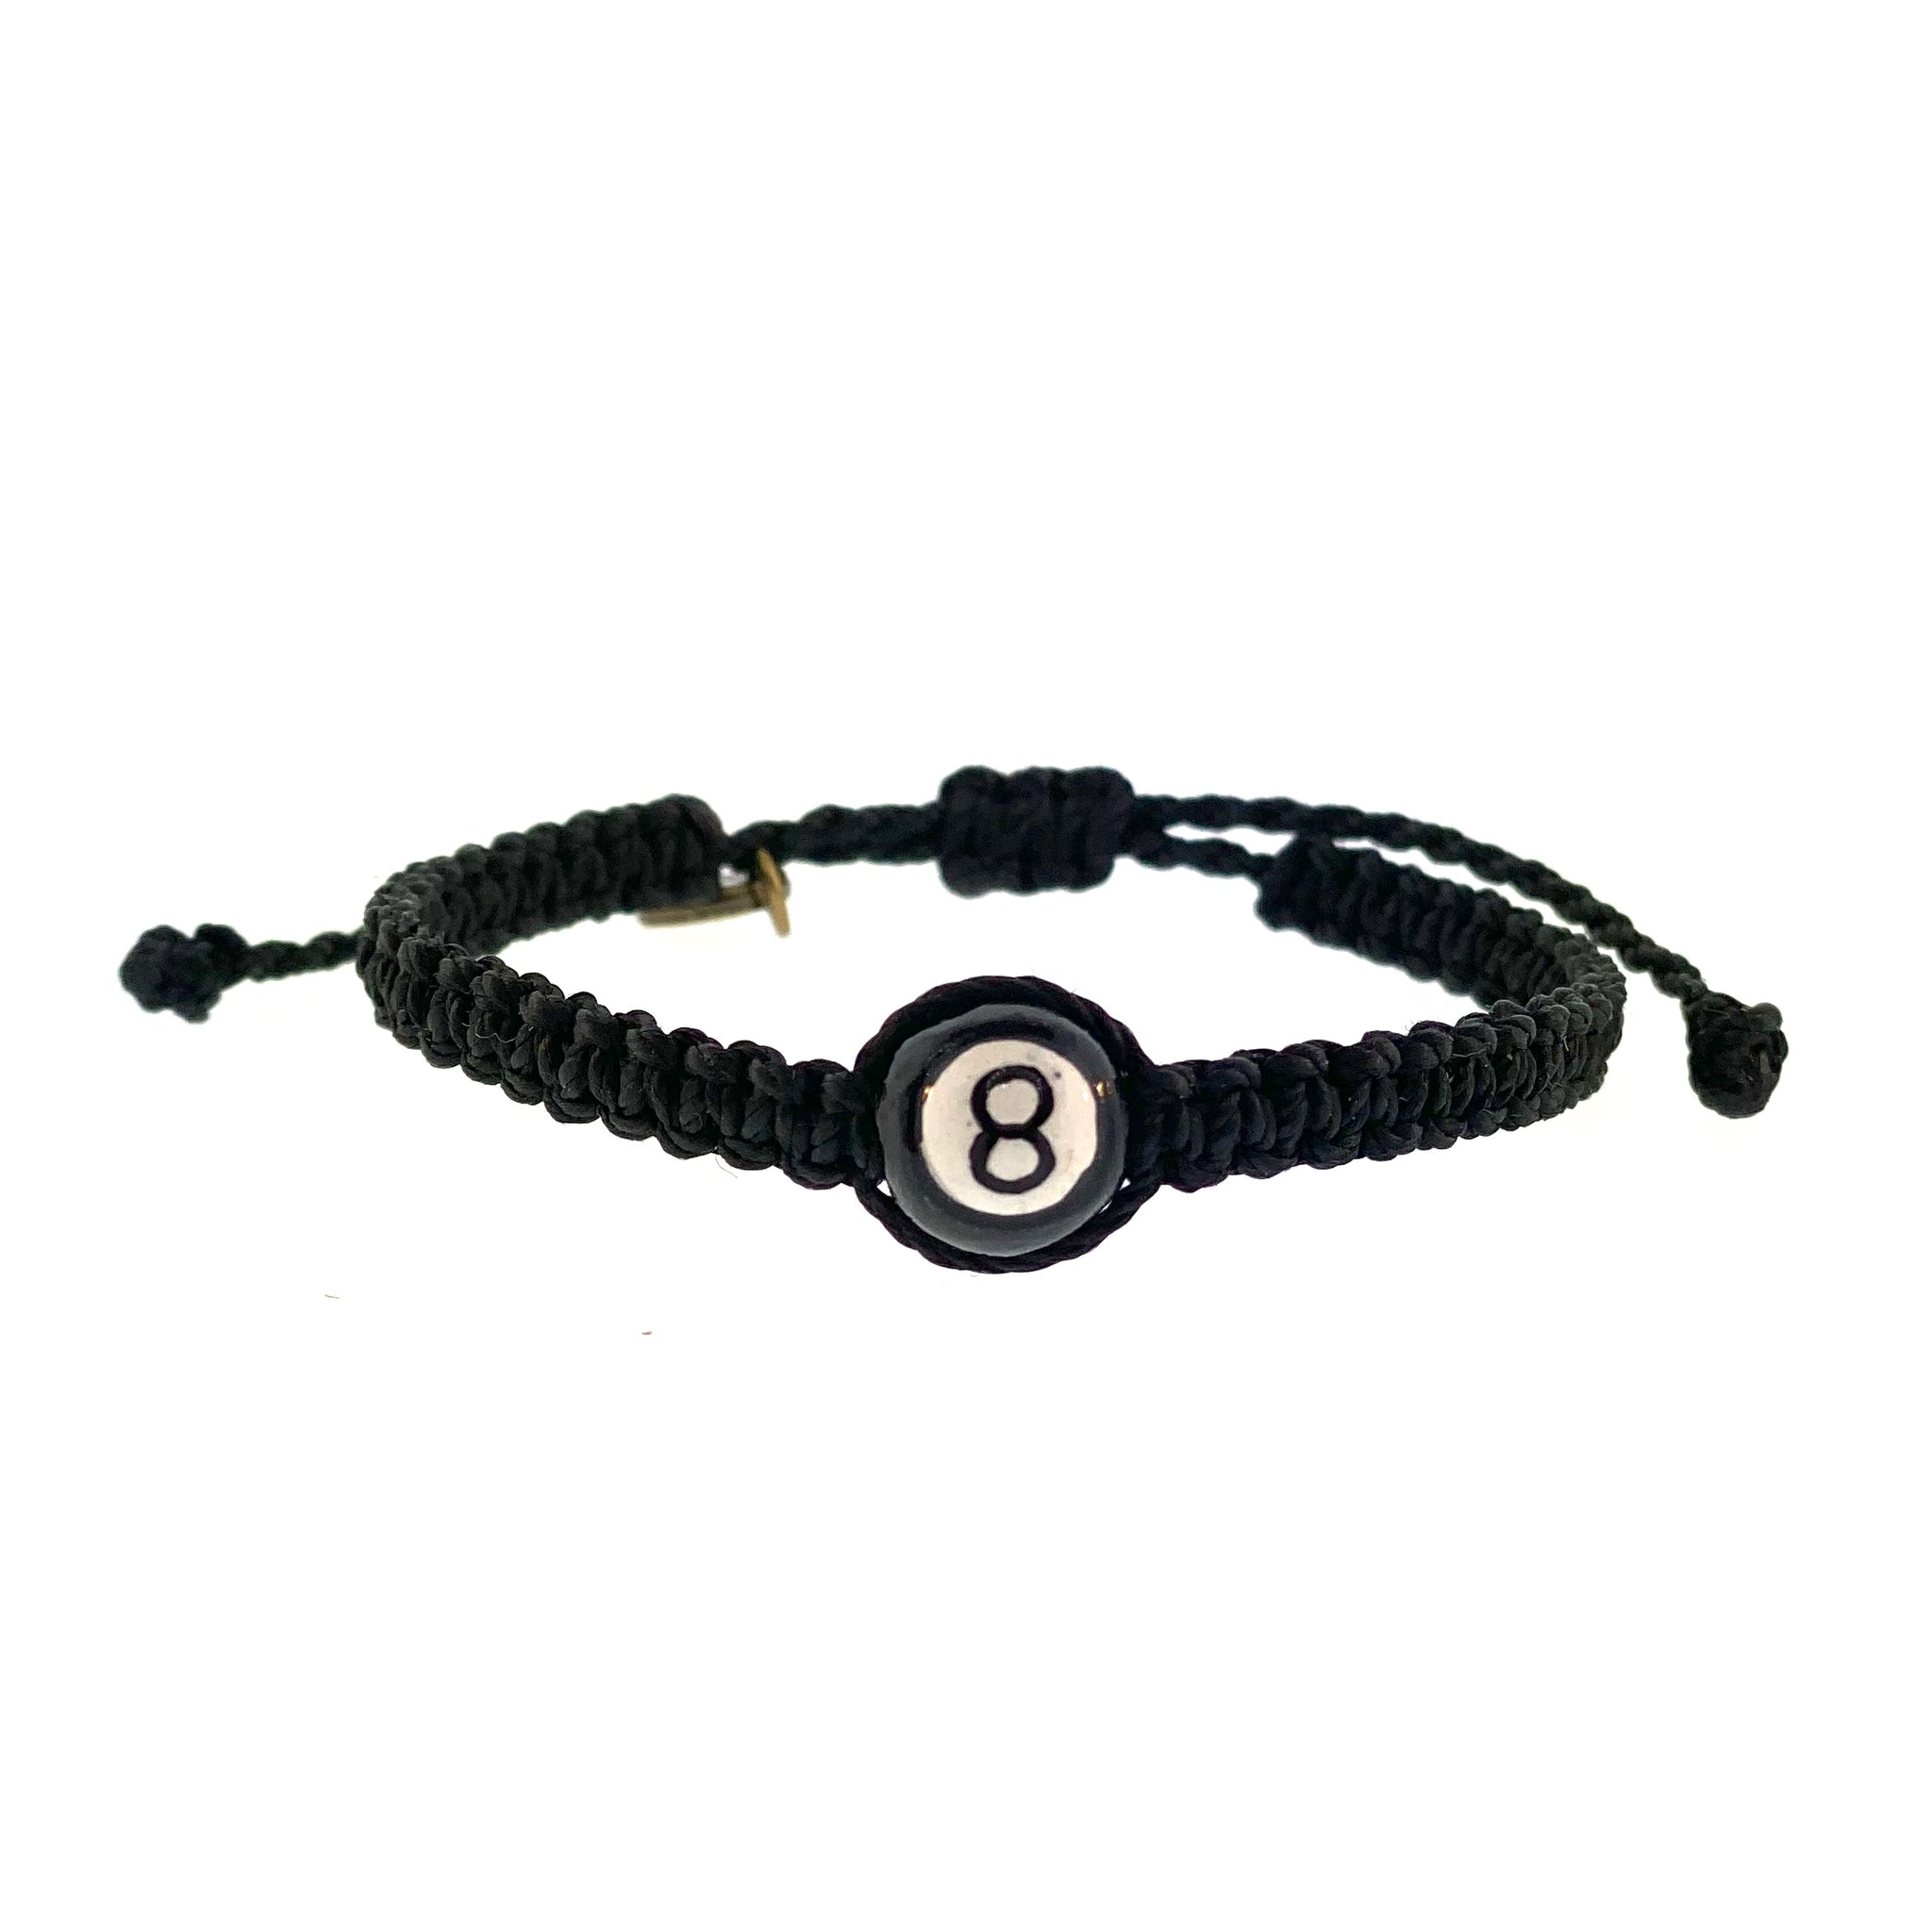 Buy Black Beauty Handmade Kala Dhaga Black Thread Bracelet for Women Men ( Black) at Amazon.in